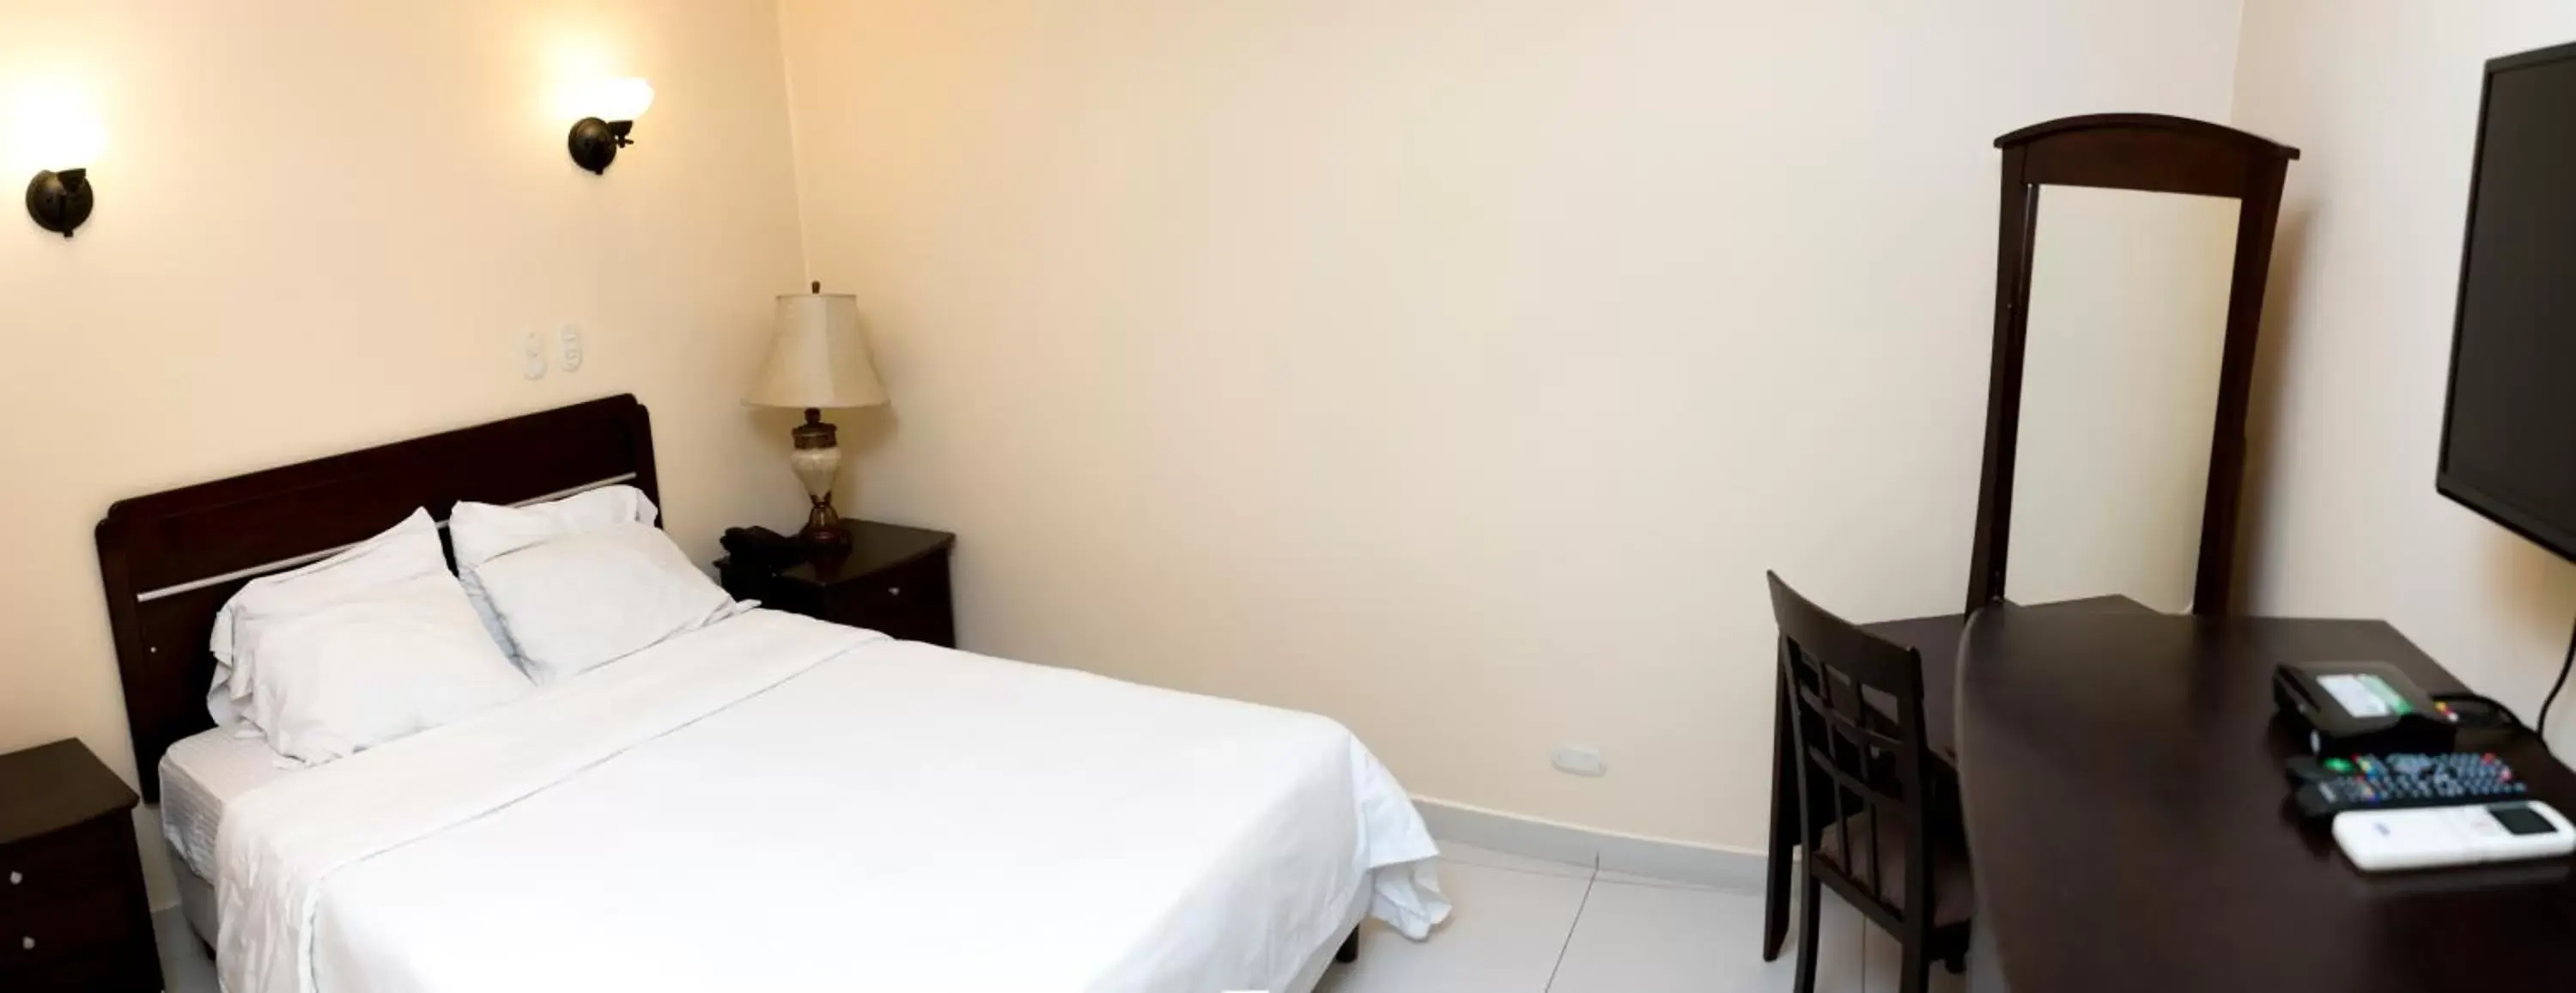 Bedroom, Room Photo in Hotel Novo